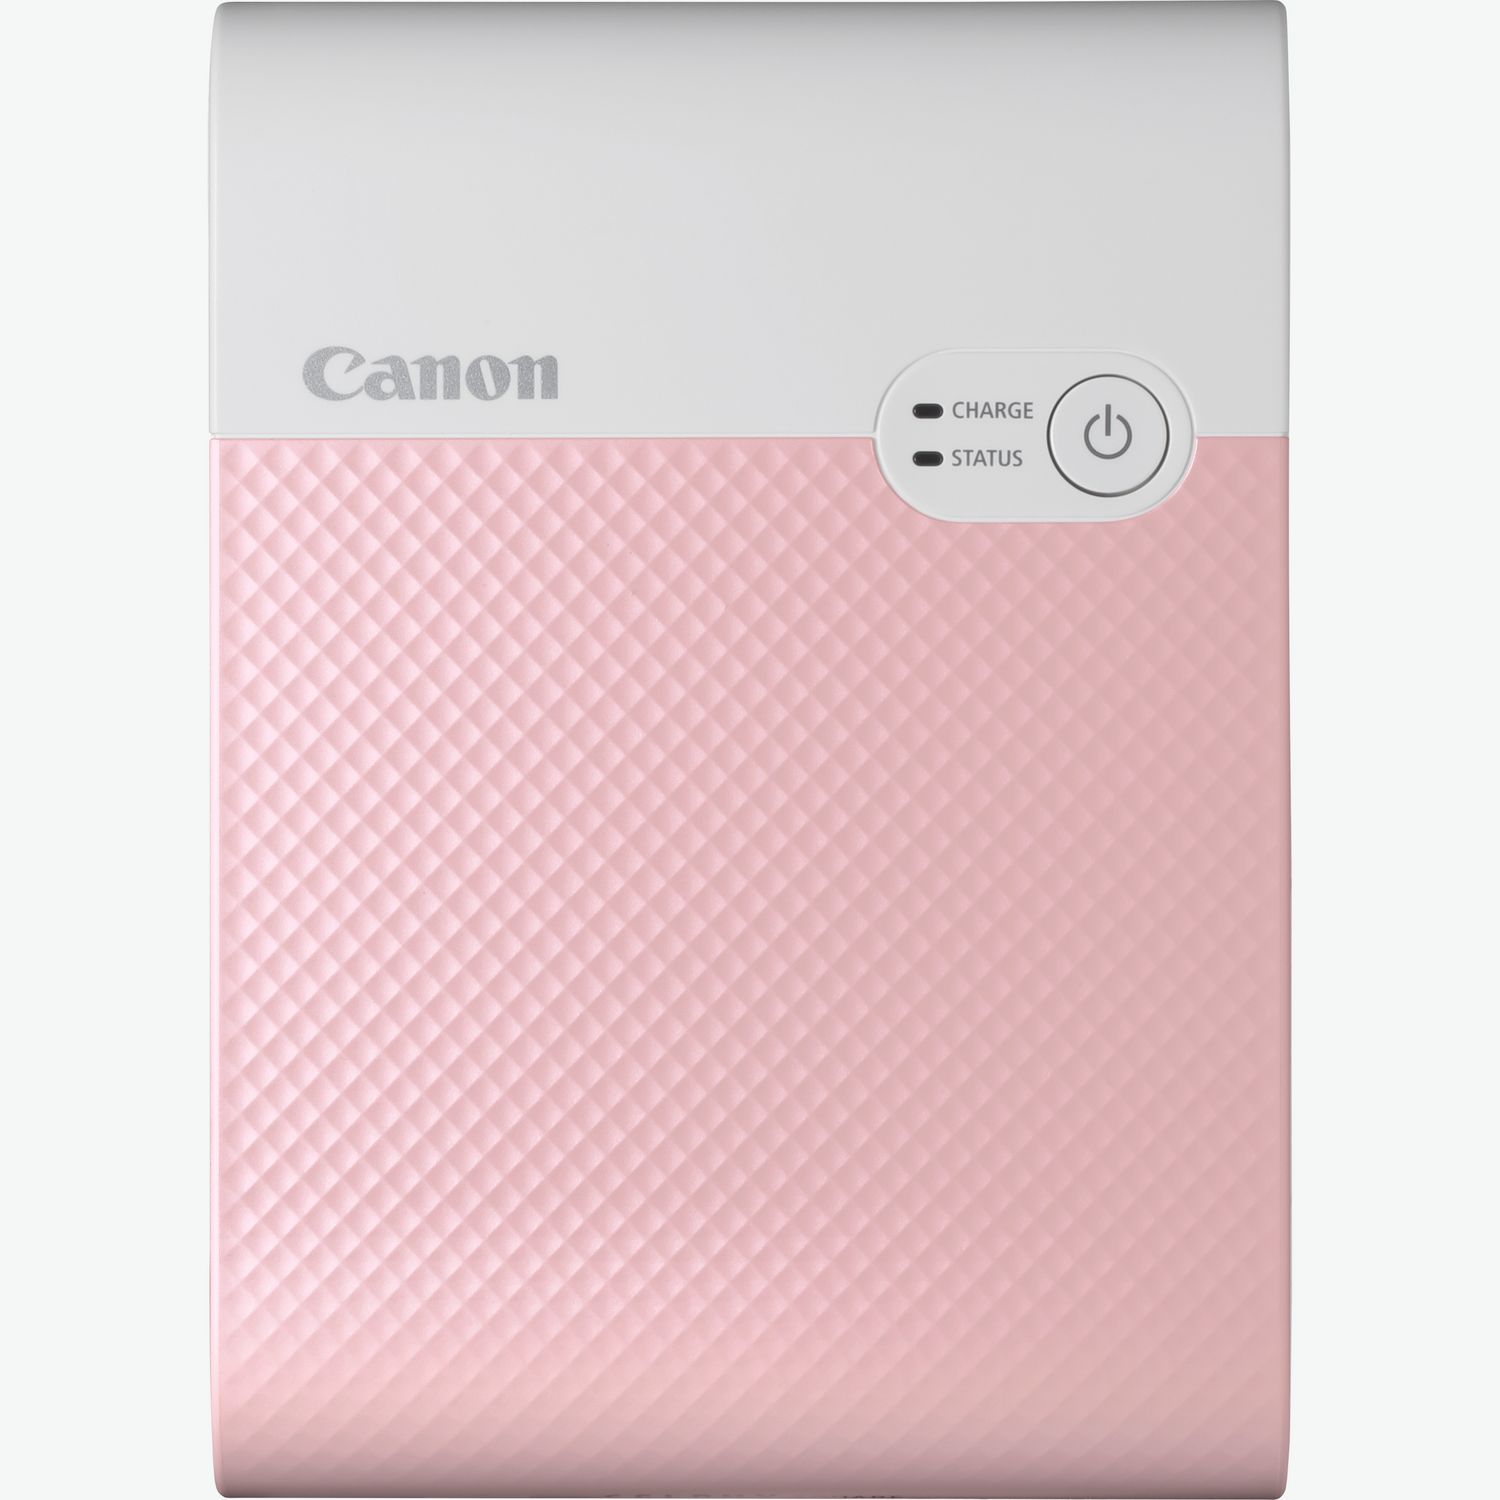 Canon Zoemini S2 Instant Camera & Pocket Printers Pearl White